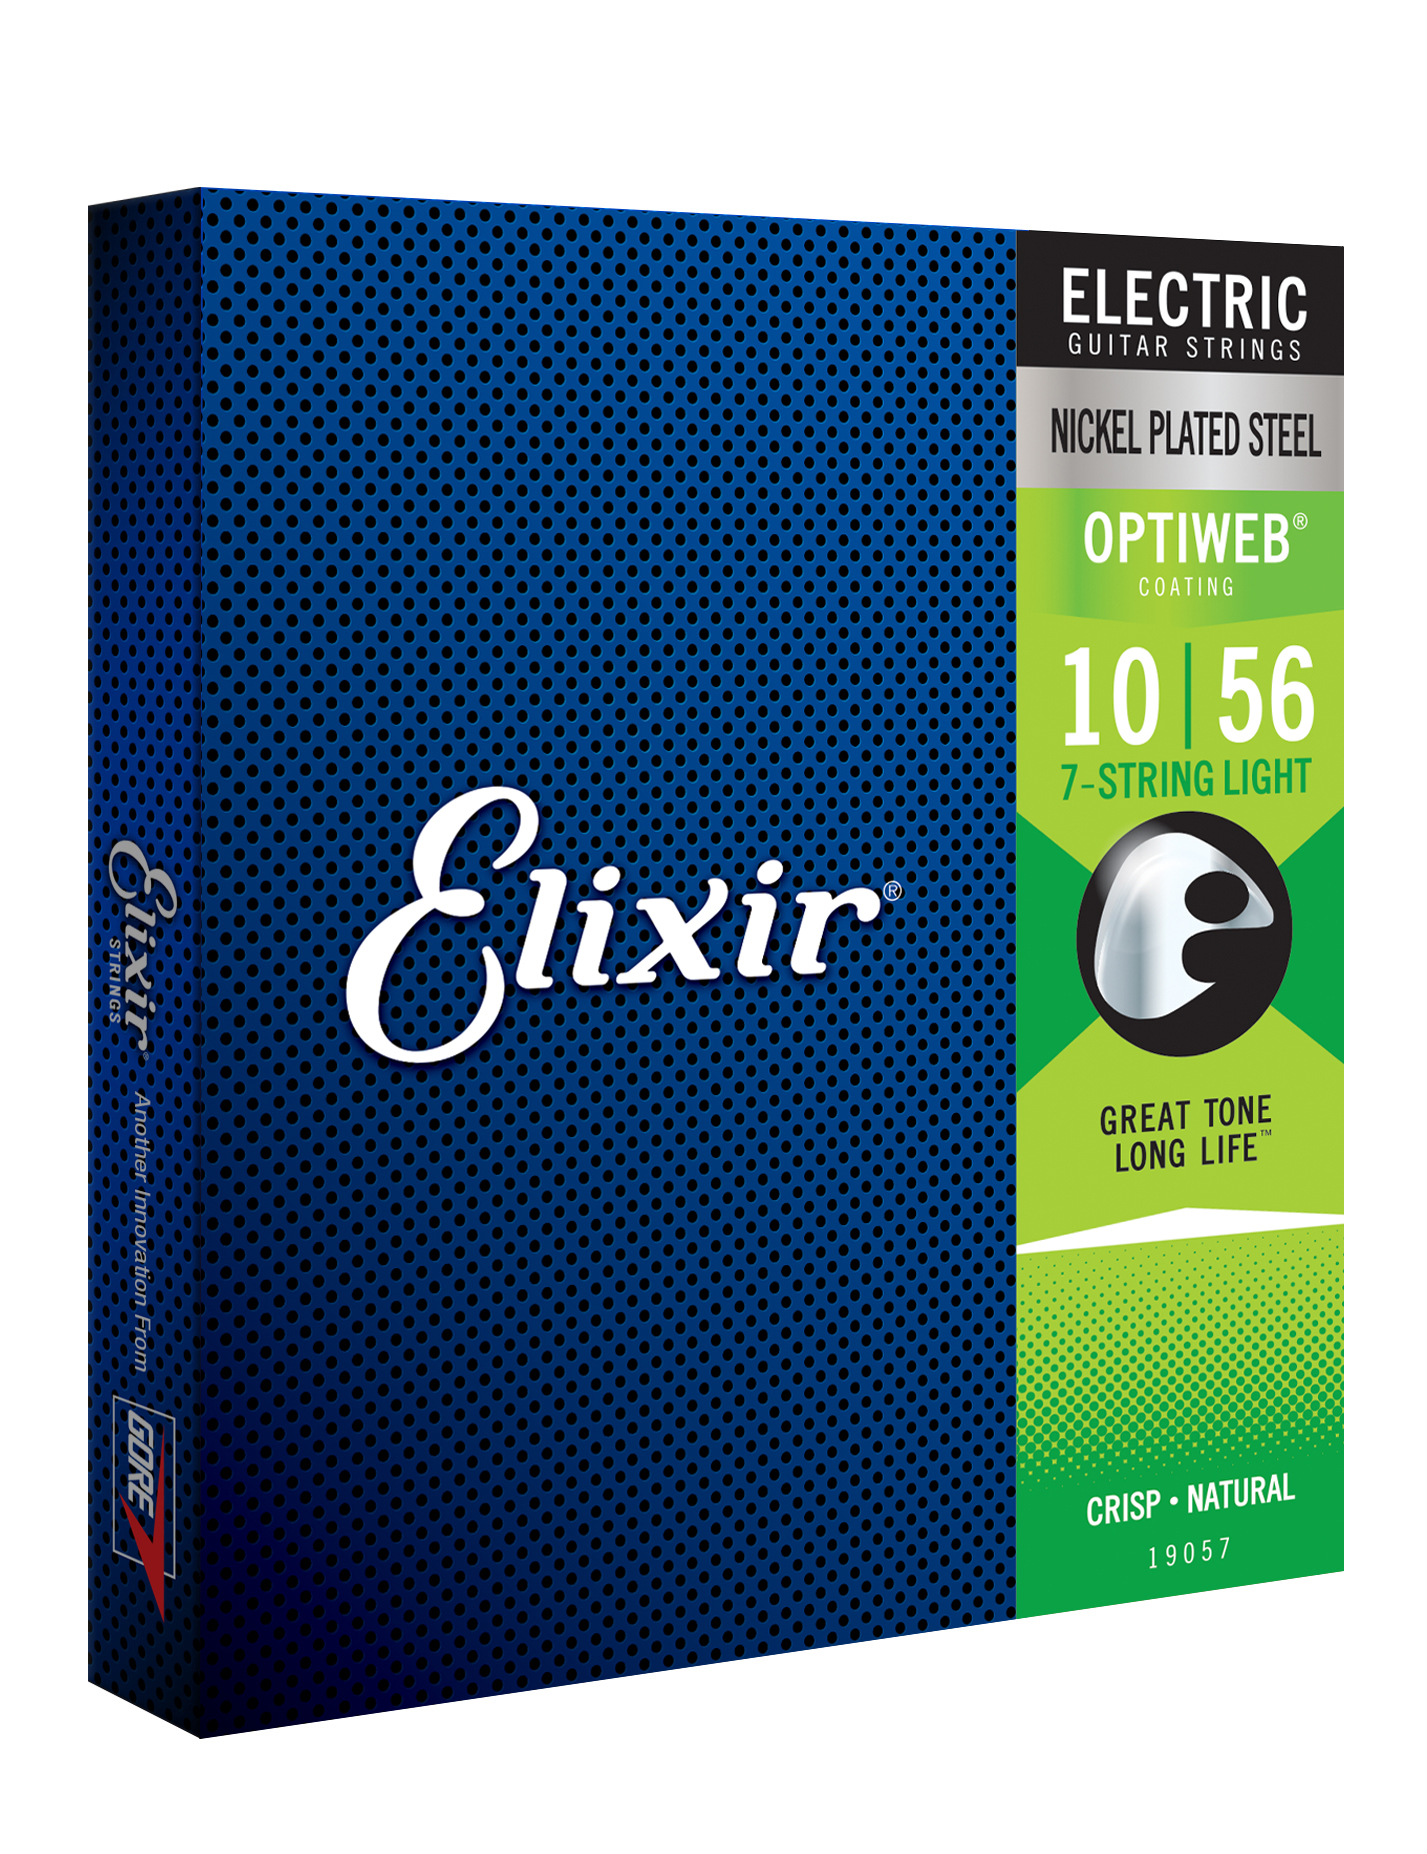 Elixir Jeu De 7 Cordes 19057 7-string Optiweb Nps Electric Guitar 7c Light 10-56 - Elektrische gitaarsnaren - Variation 1